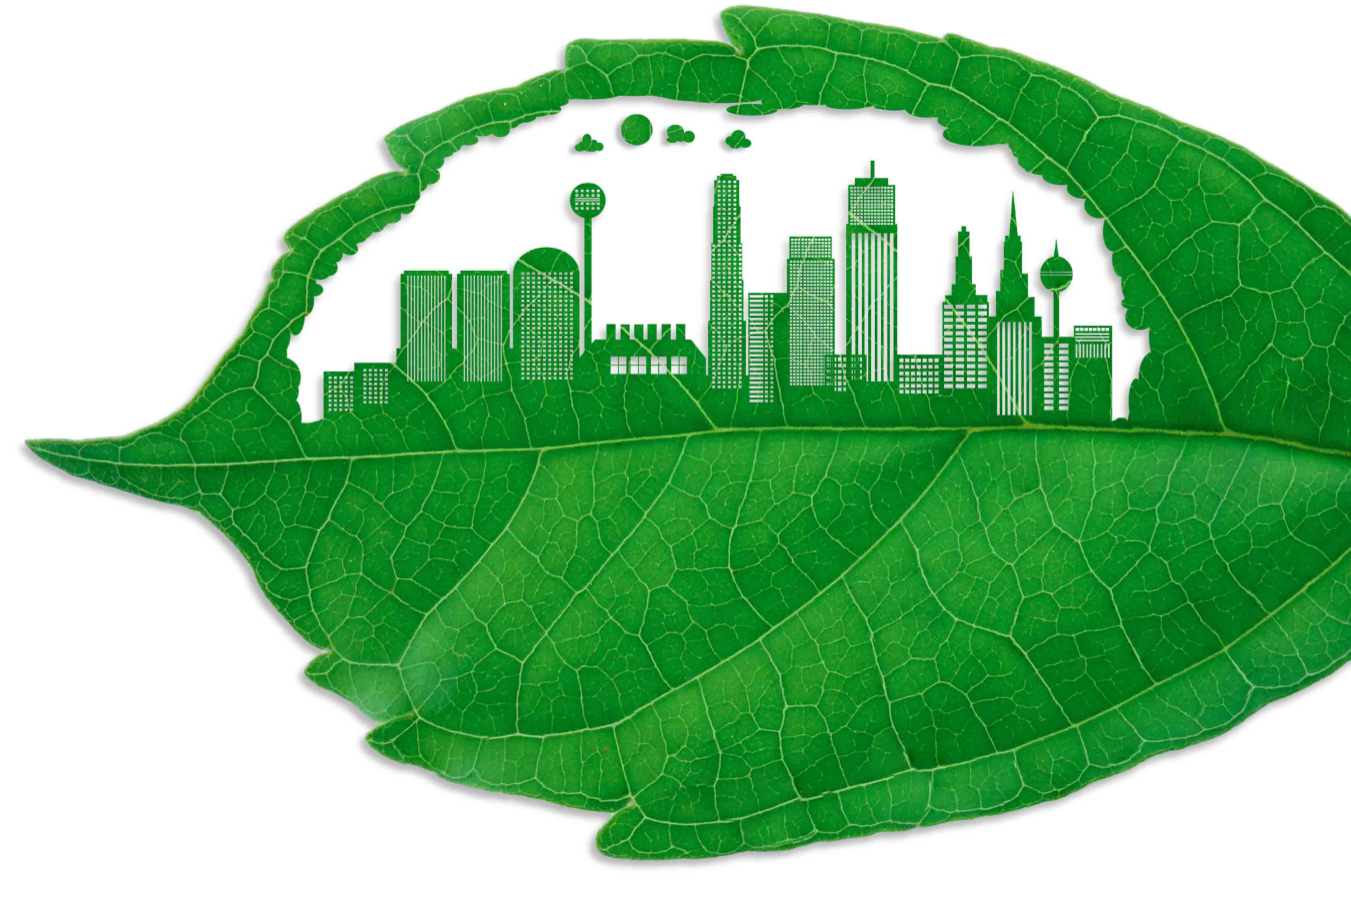 Hoja verde con ciudades y edificios